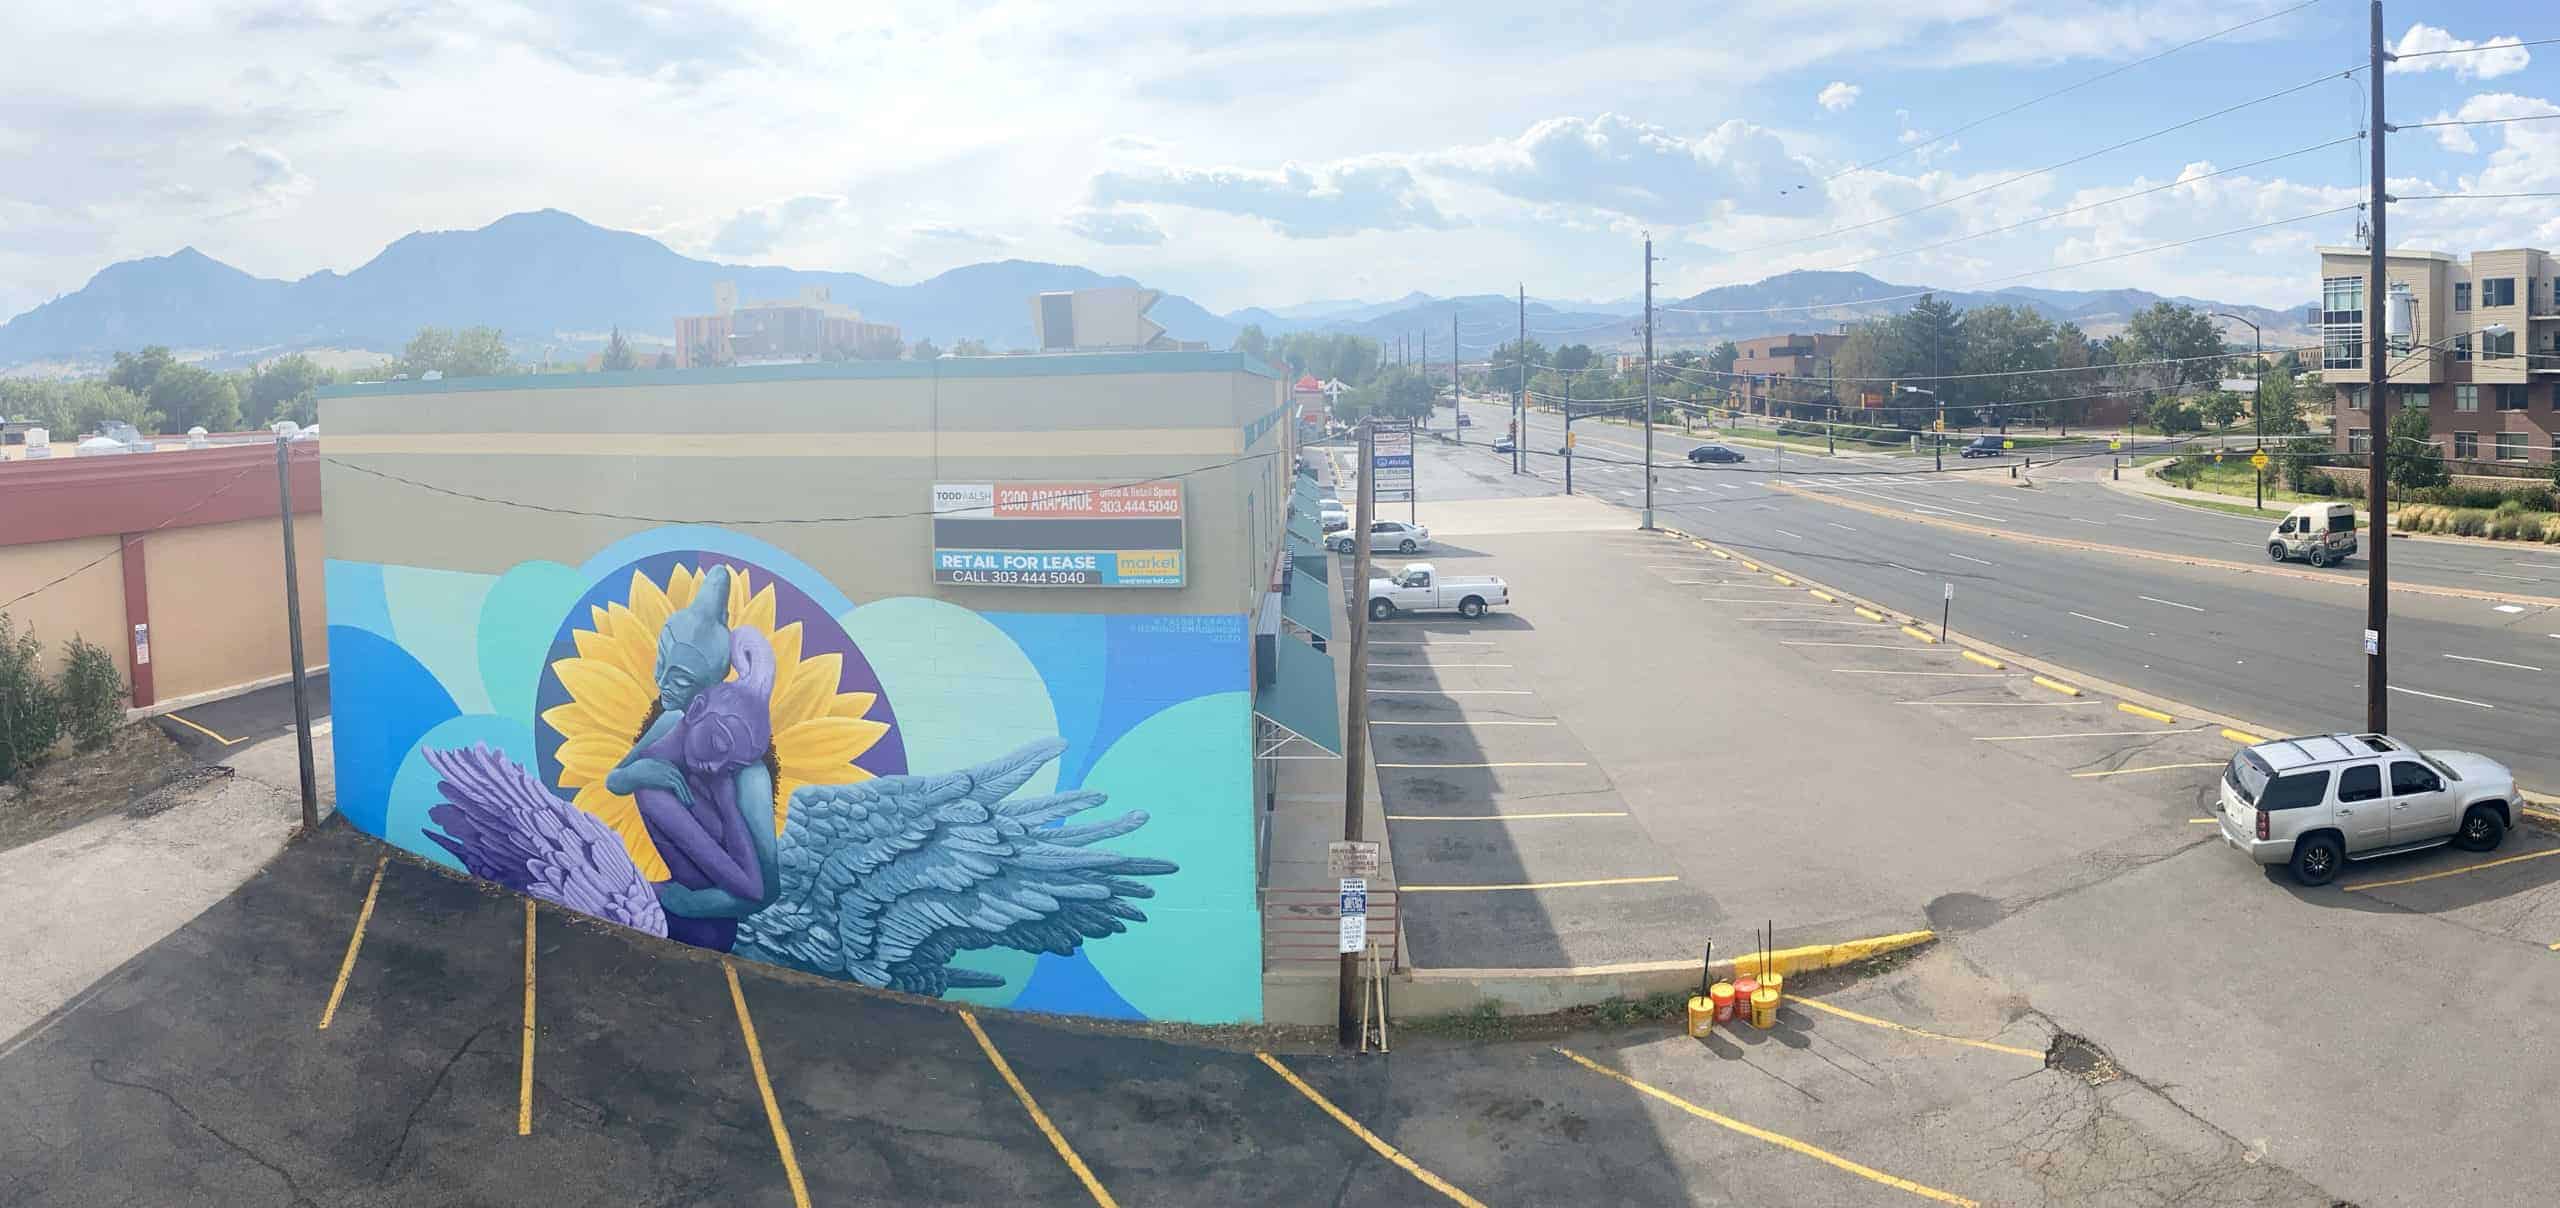 Jason T. Graves, Boulder Murals, Street Art, City of Boulder, Creative neighborhoods